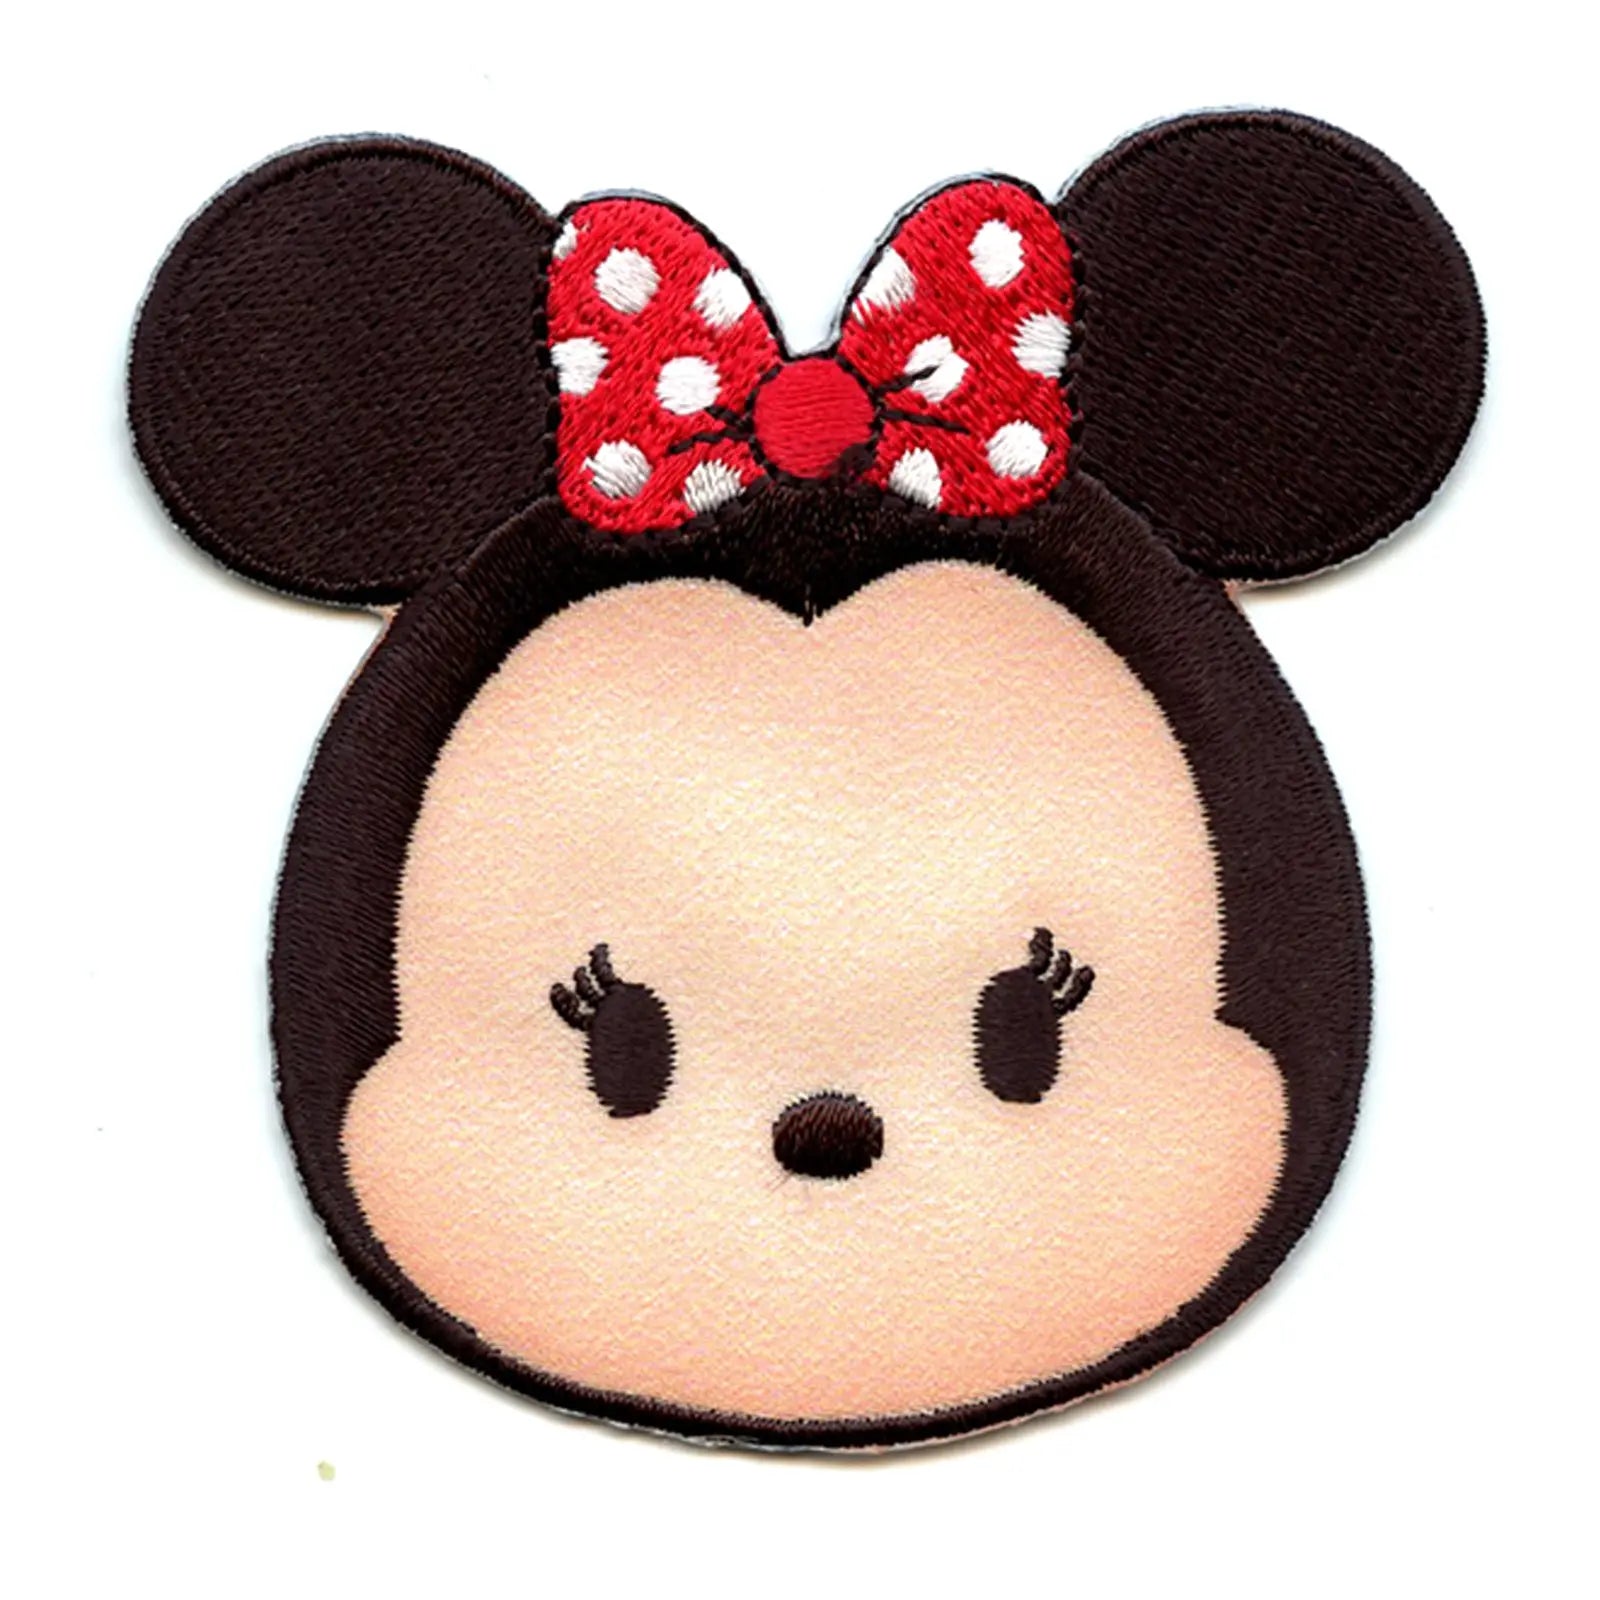 Disney Tsum Tsum Iron-On Applique Minnie Mouse